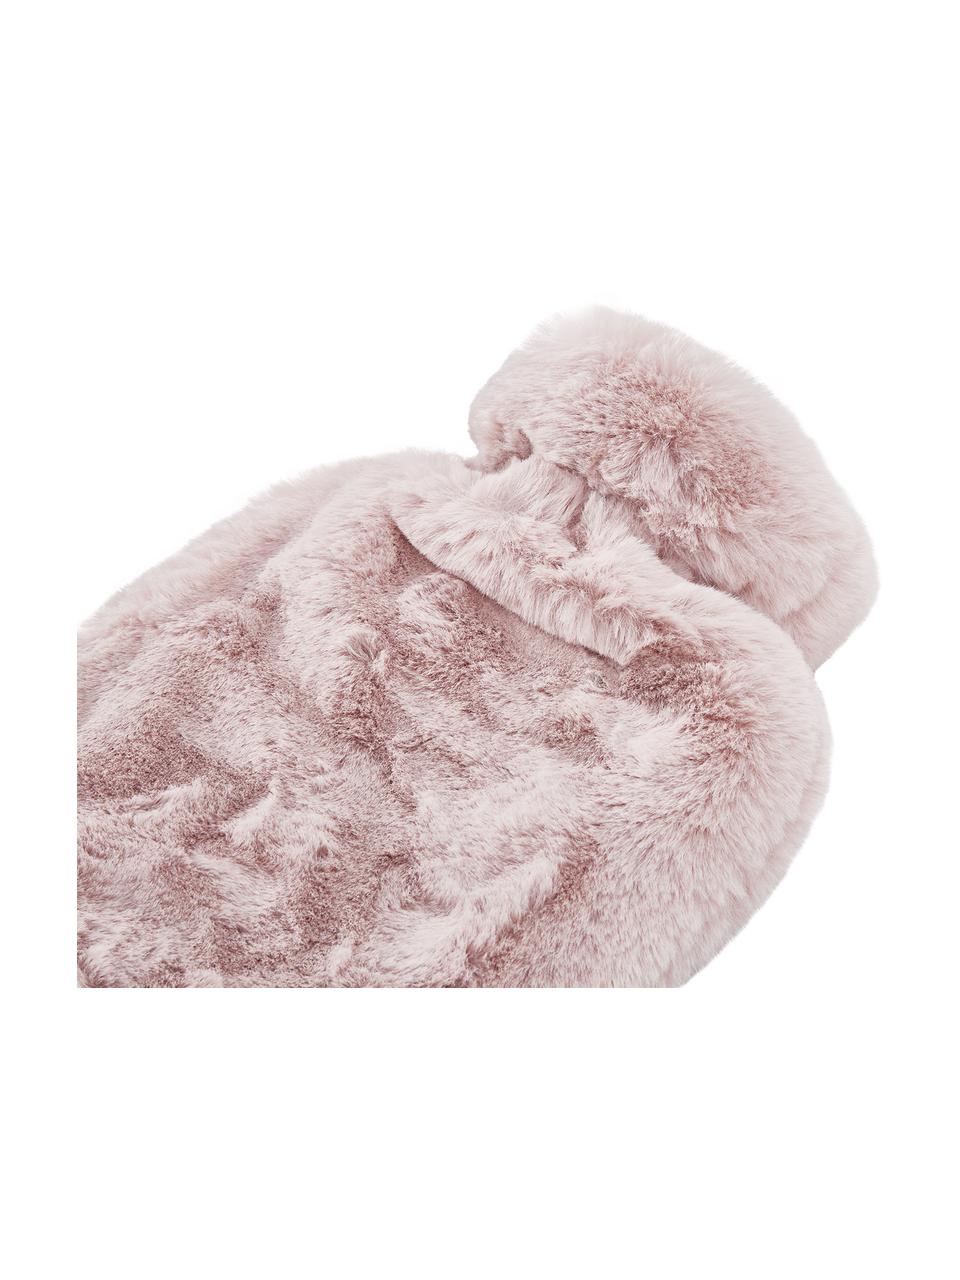 Termofor ze sztucznym futrem Mette, Tapicerka: 100% poliester, Blady różowy, S 20 x D 32 cm